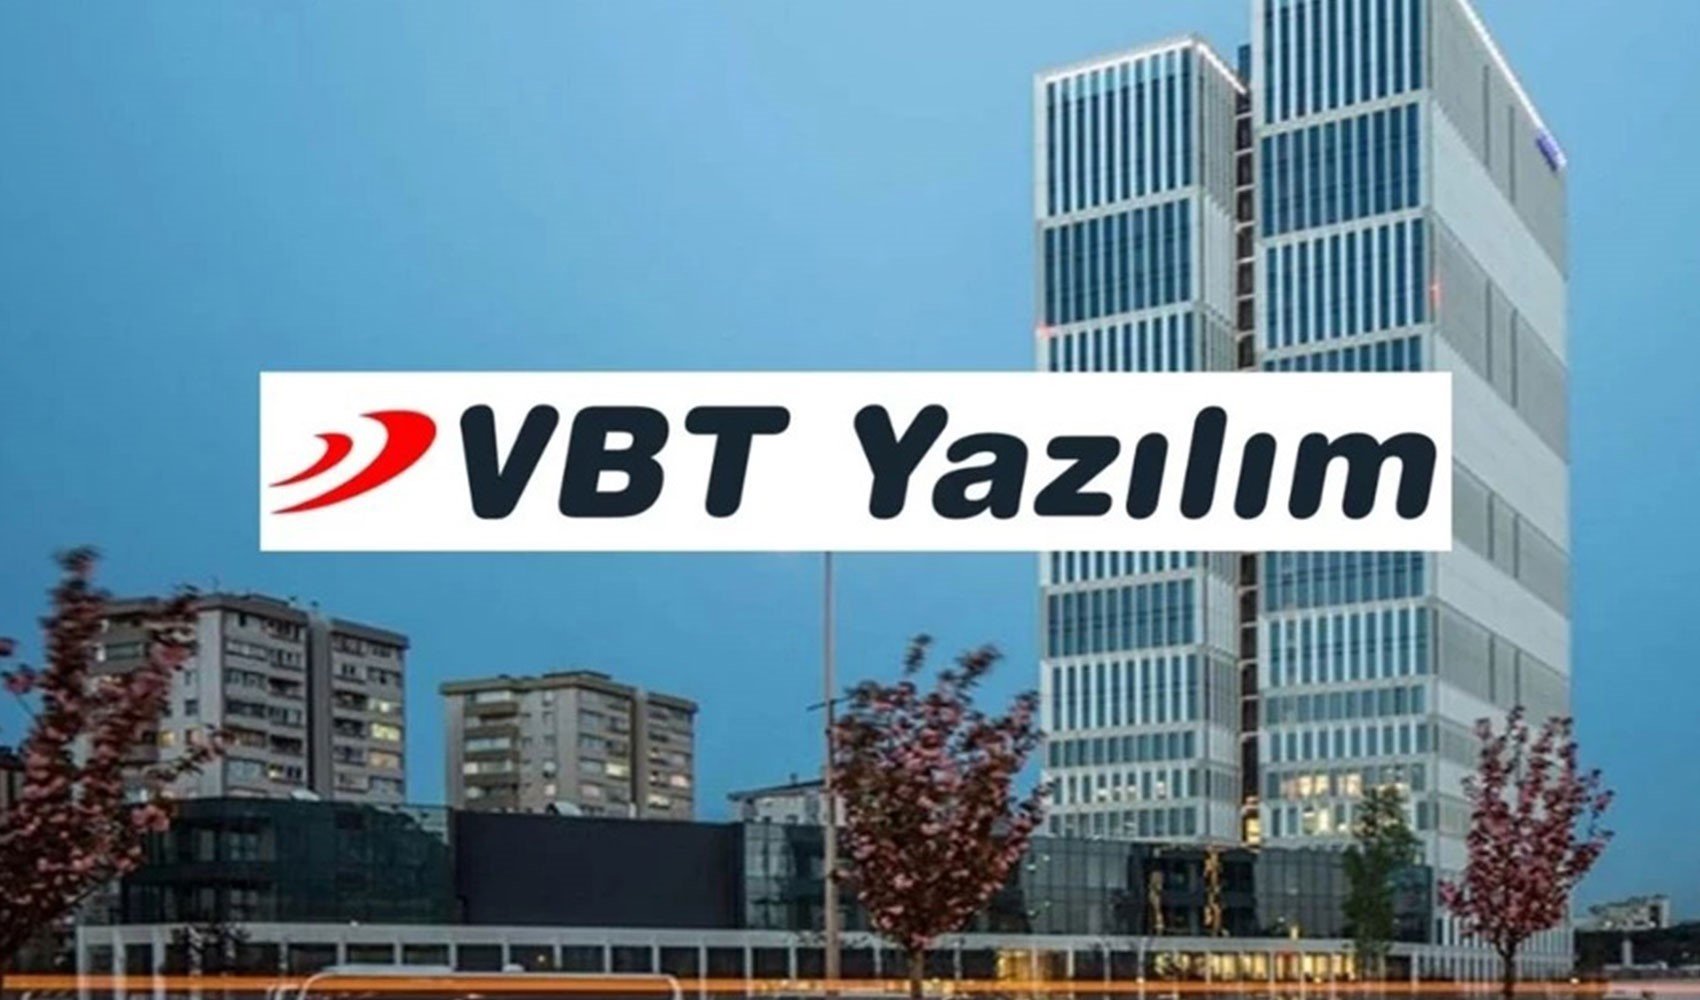 VBT Yazılım A.Ş.'den KAP Bildirimi: Türkiye'deki Yerel Bir Banka ile Sözleşme İmzalandı